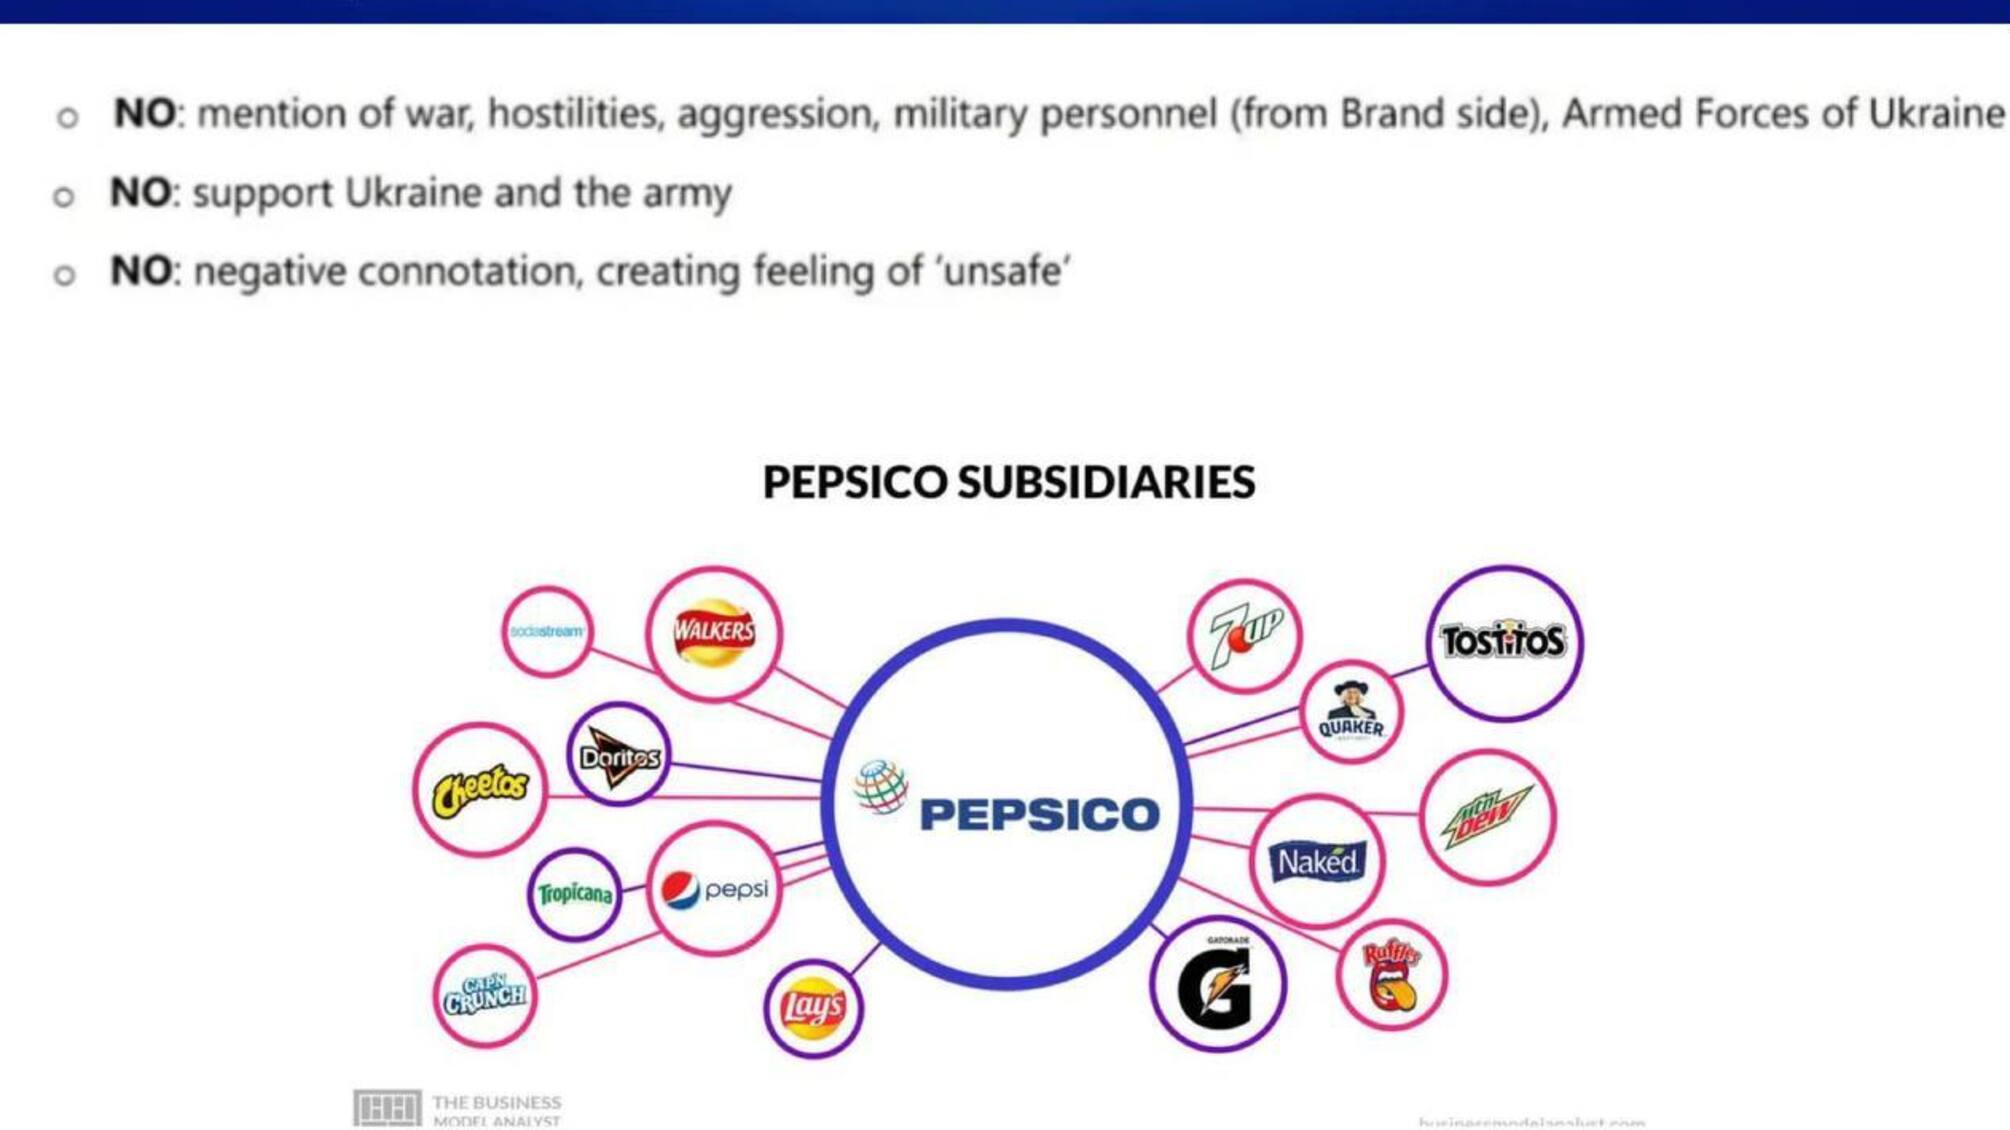 Компания PepsiCo запрещает упоминать ВСУ и войну в своей рекламе